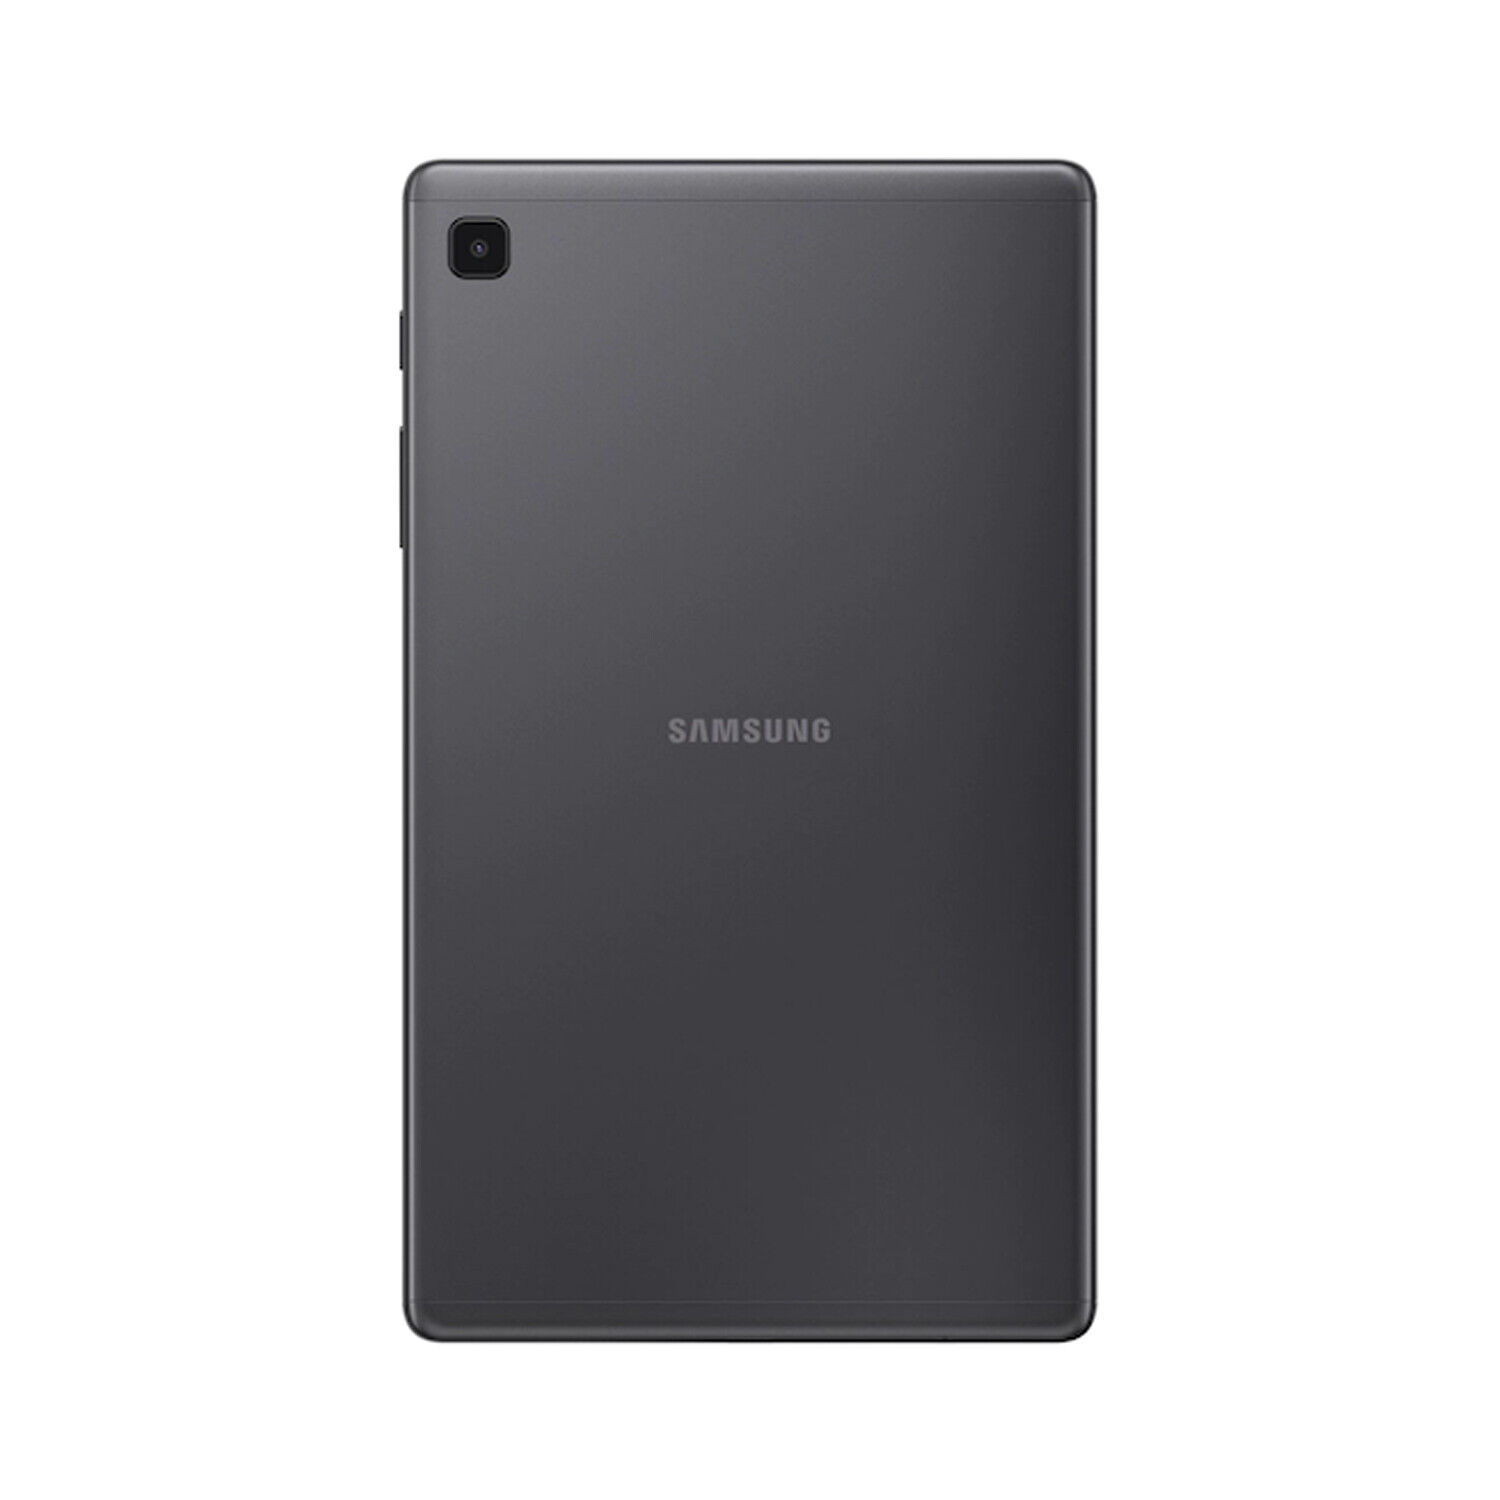 Samsung Galaxy Tab A7 Lite WiFi Sm-t220 3gb/32gb International 